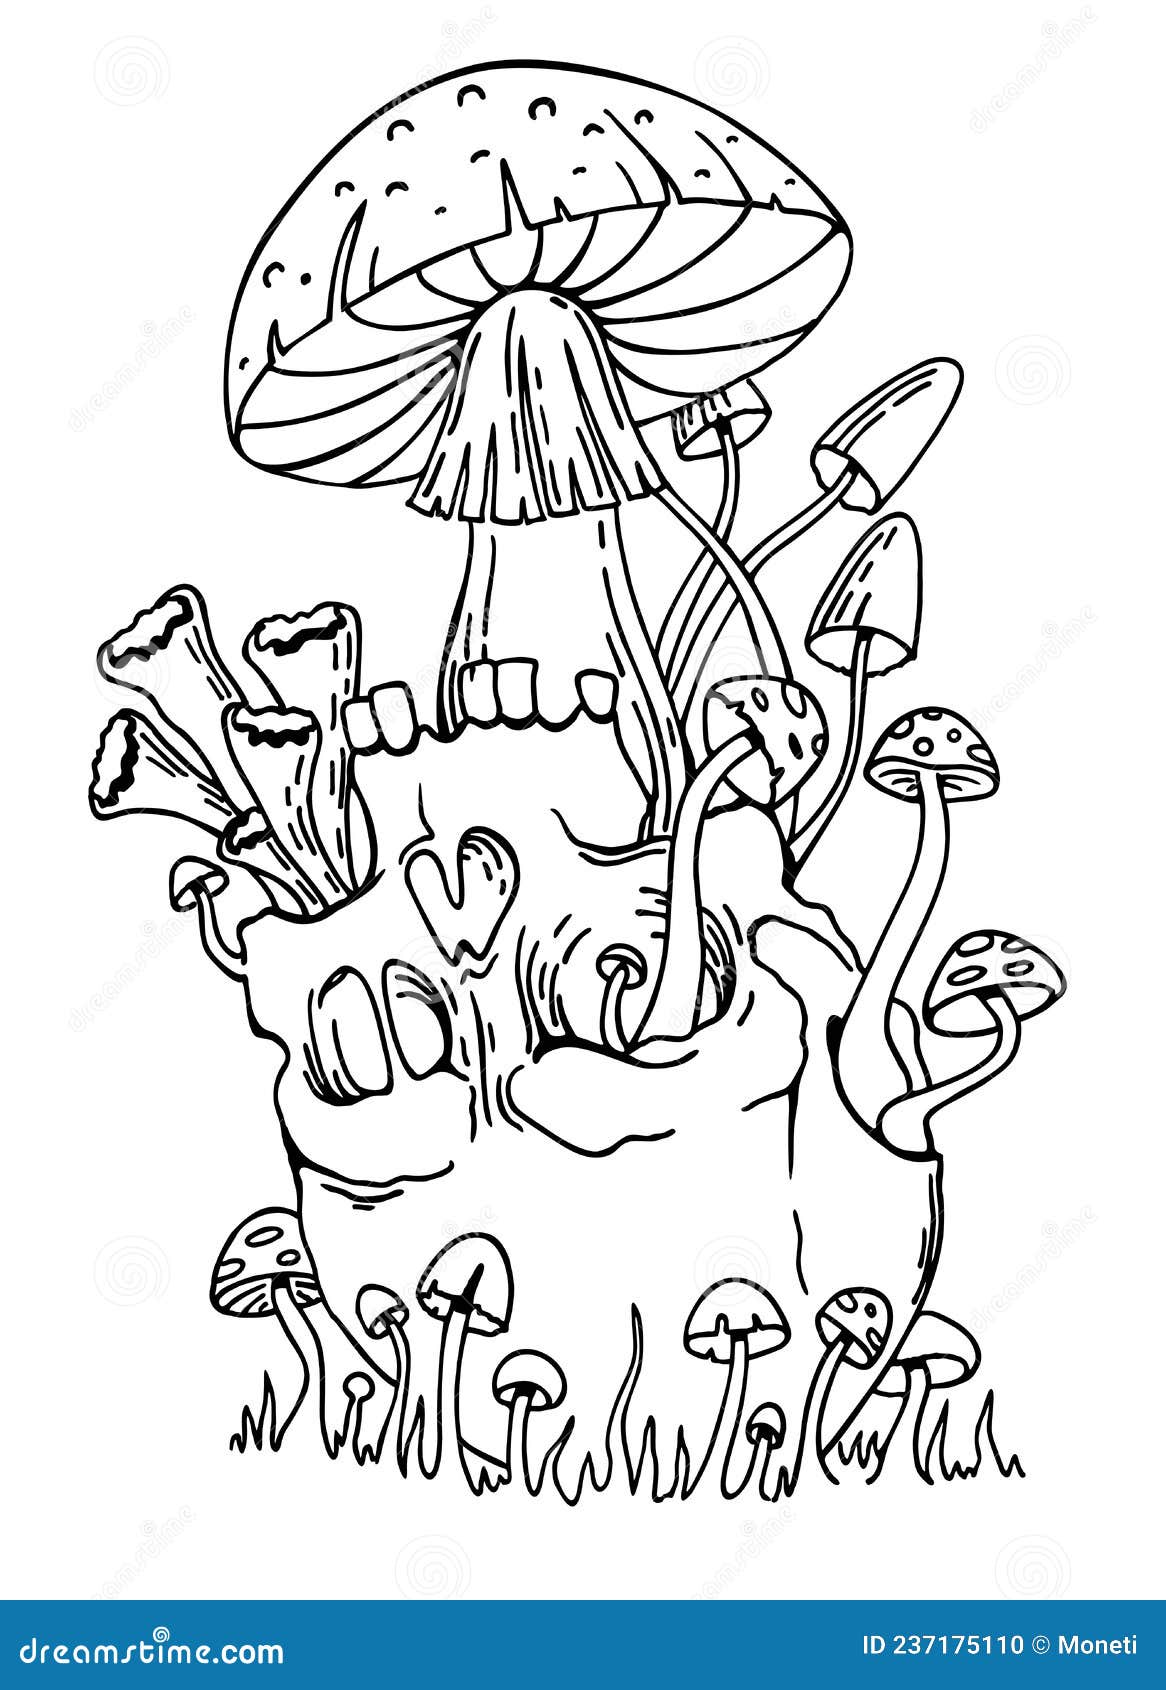 Mushroom Tattoo Images  Free Download on Freepik